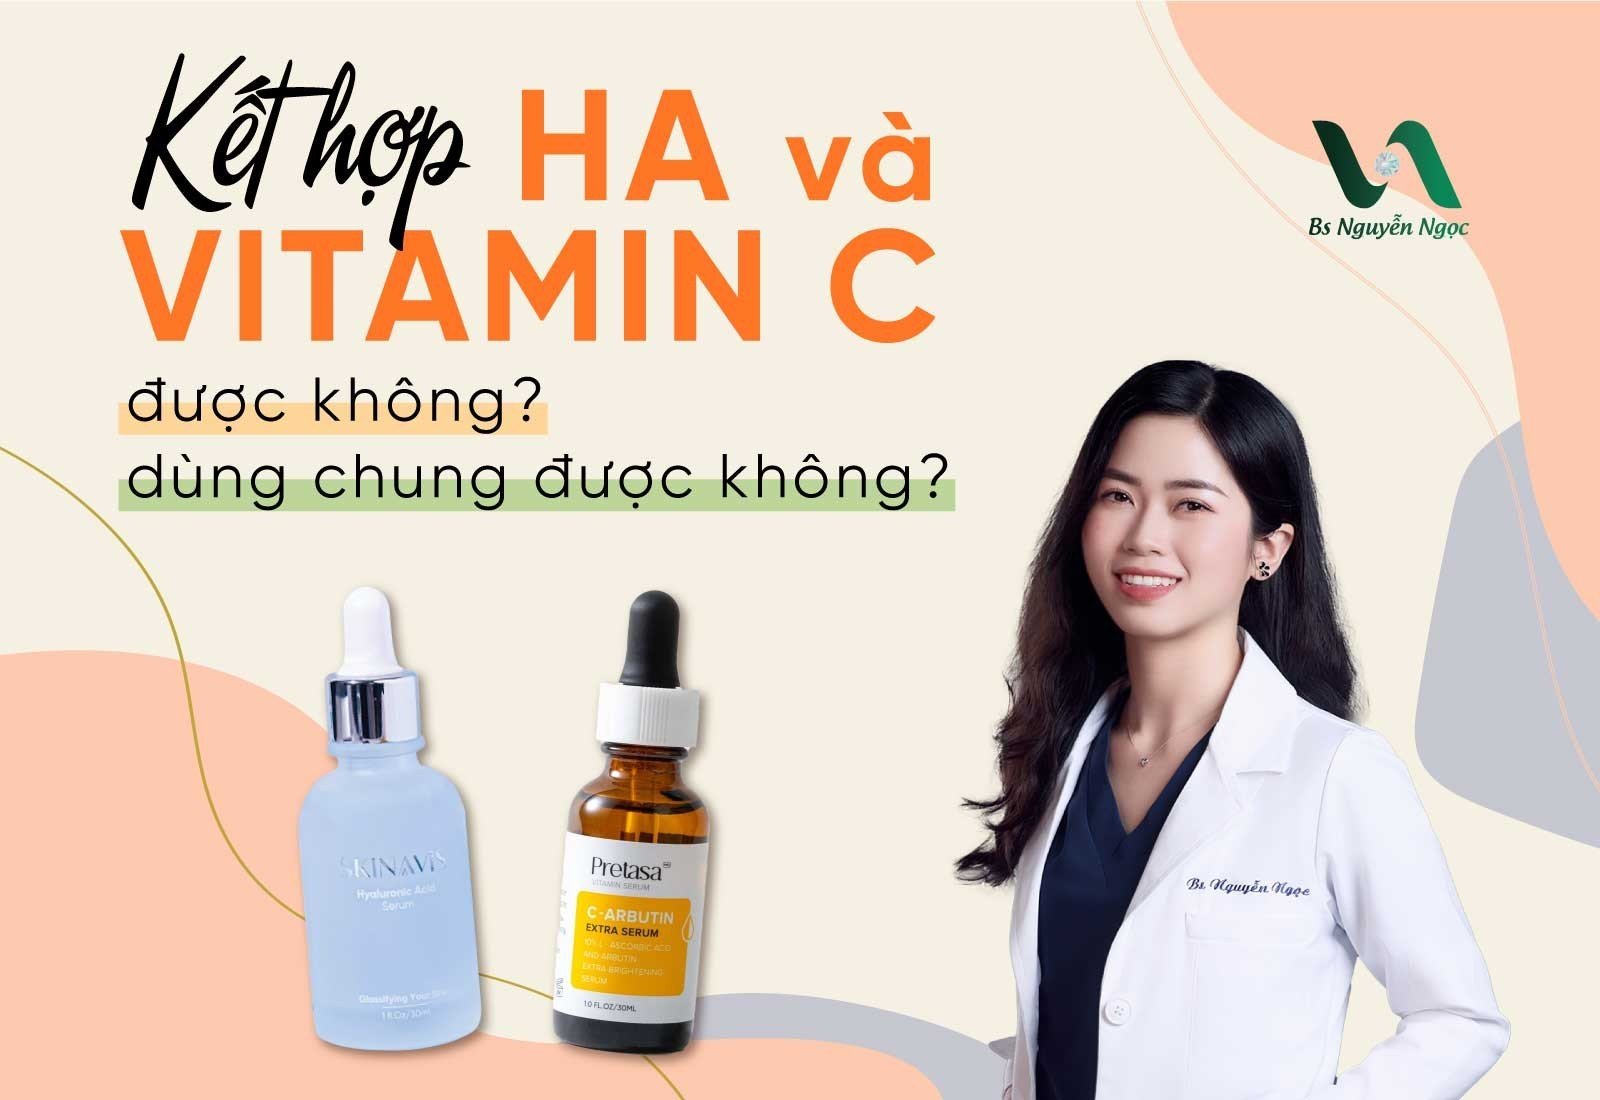 Kết hợp HA và Vitamin C được không? Dùng chung được không?